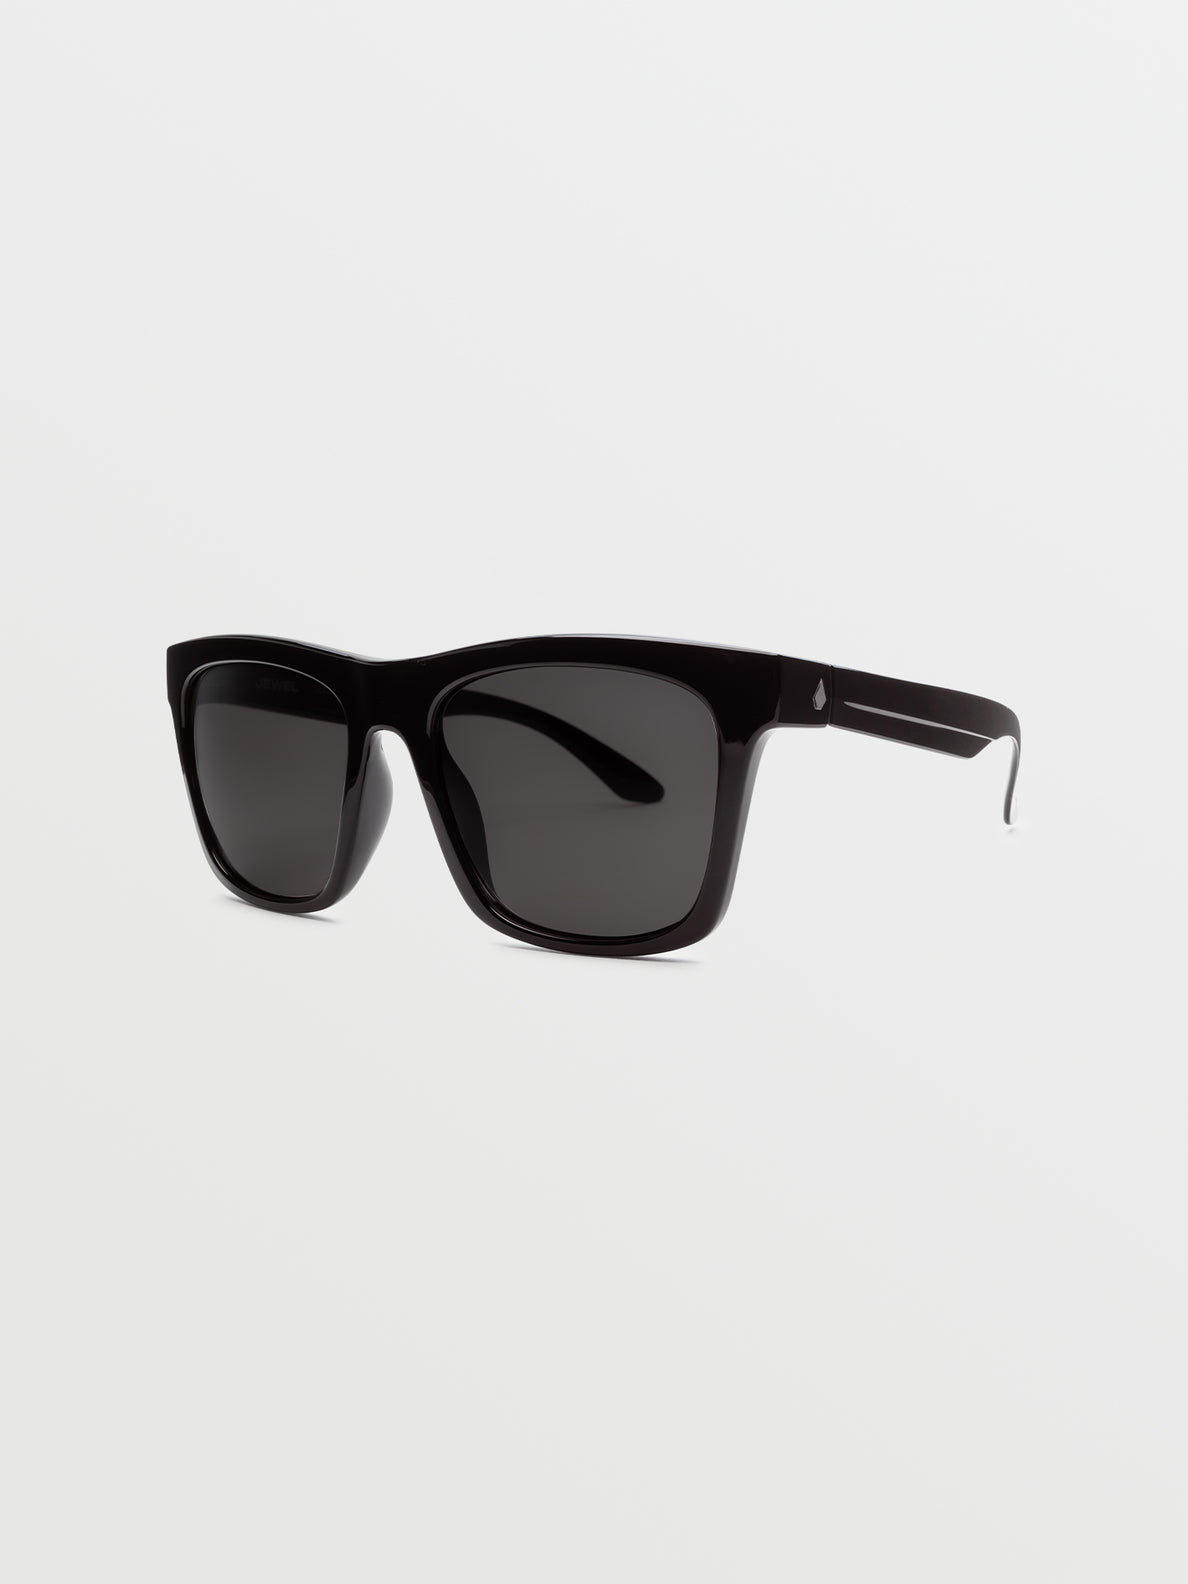 Jewel Sunglasses - Gloss Black/Gray (VE02500201_0000) [3]